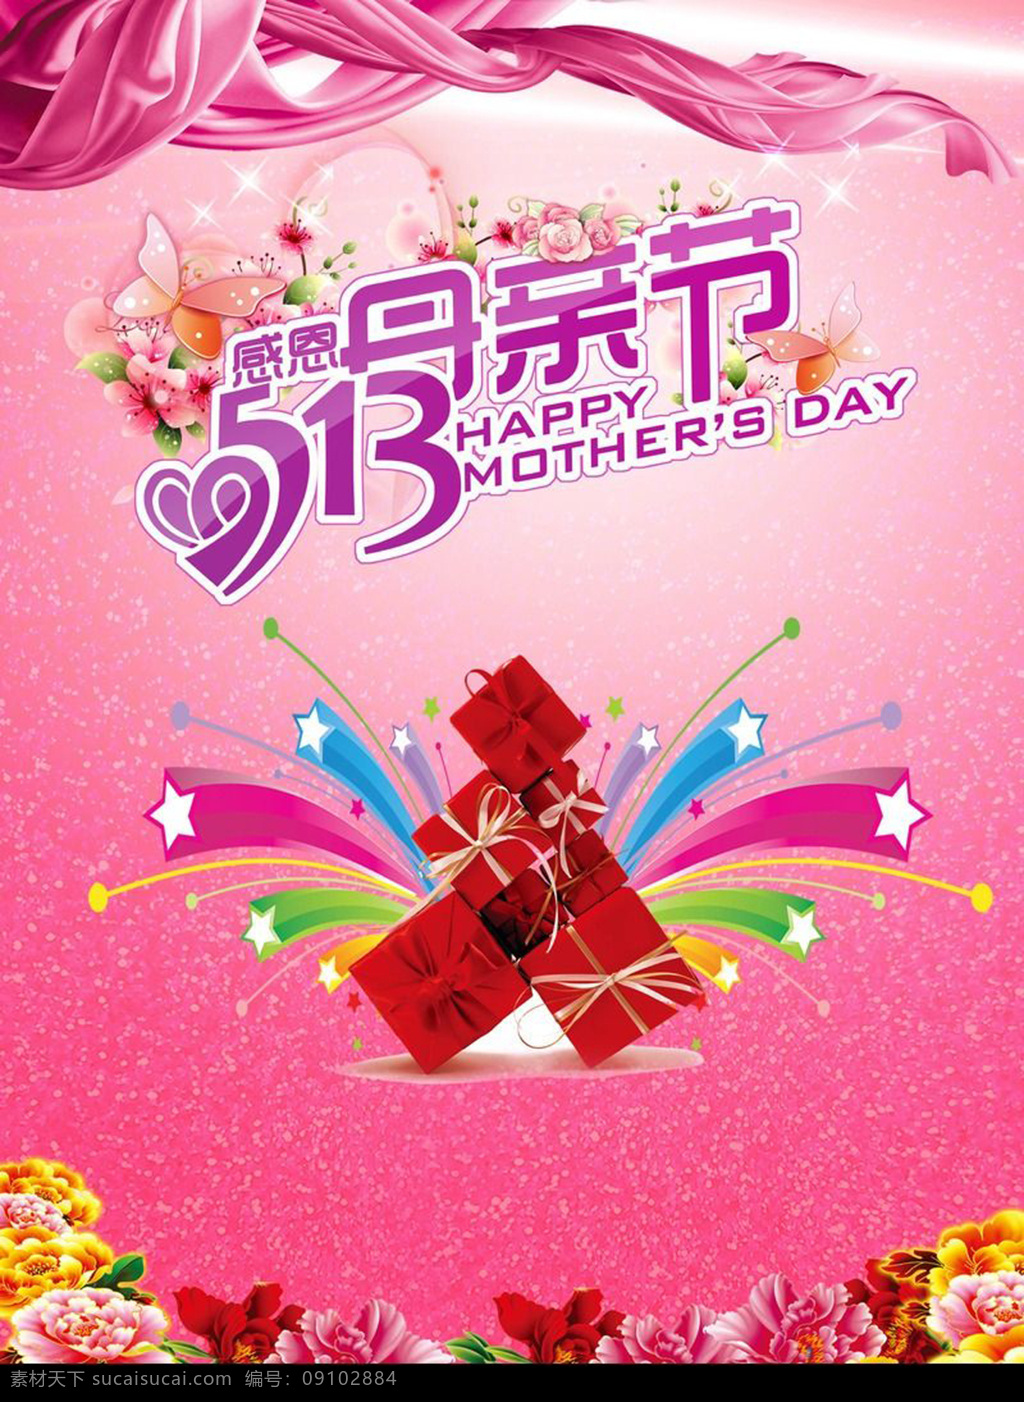 母亲节 促销活动 海报 母亲节素材 模板下载 母亲爱心 玫瑰花 礼物 背景红色 粉色